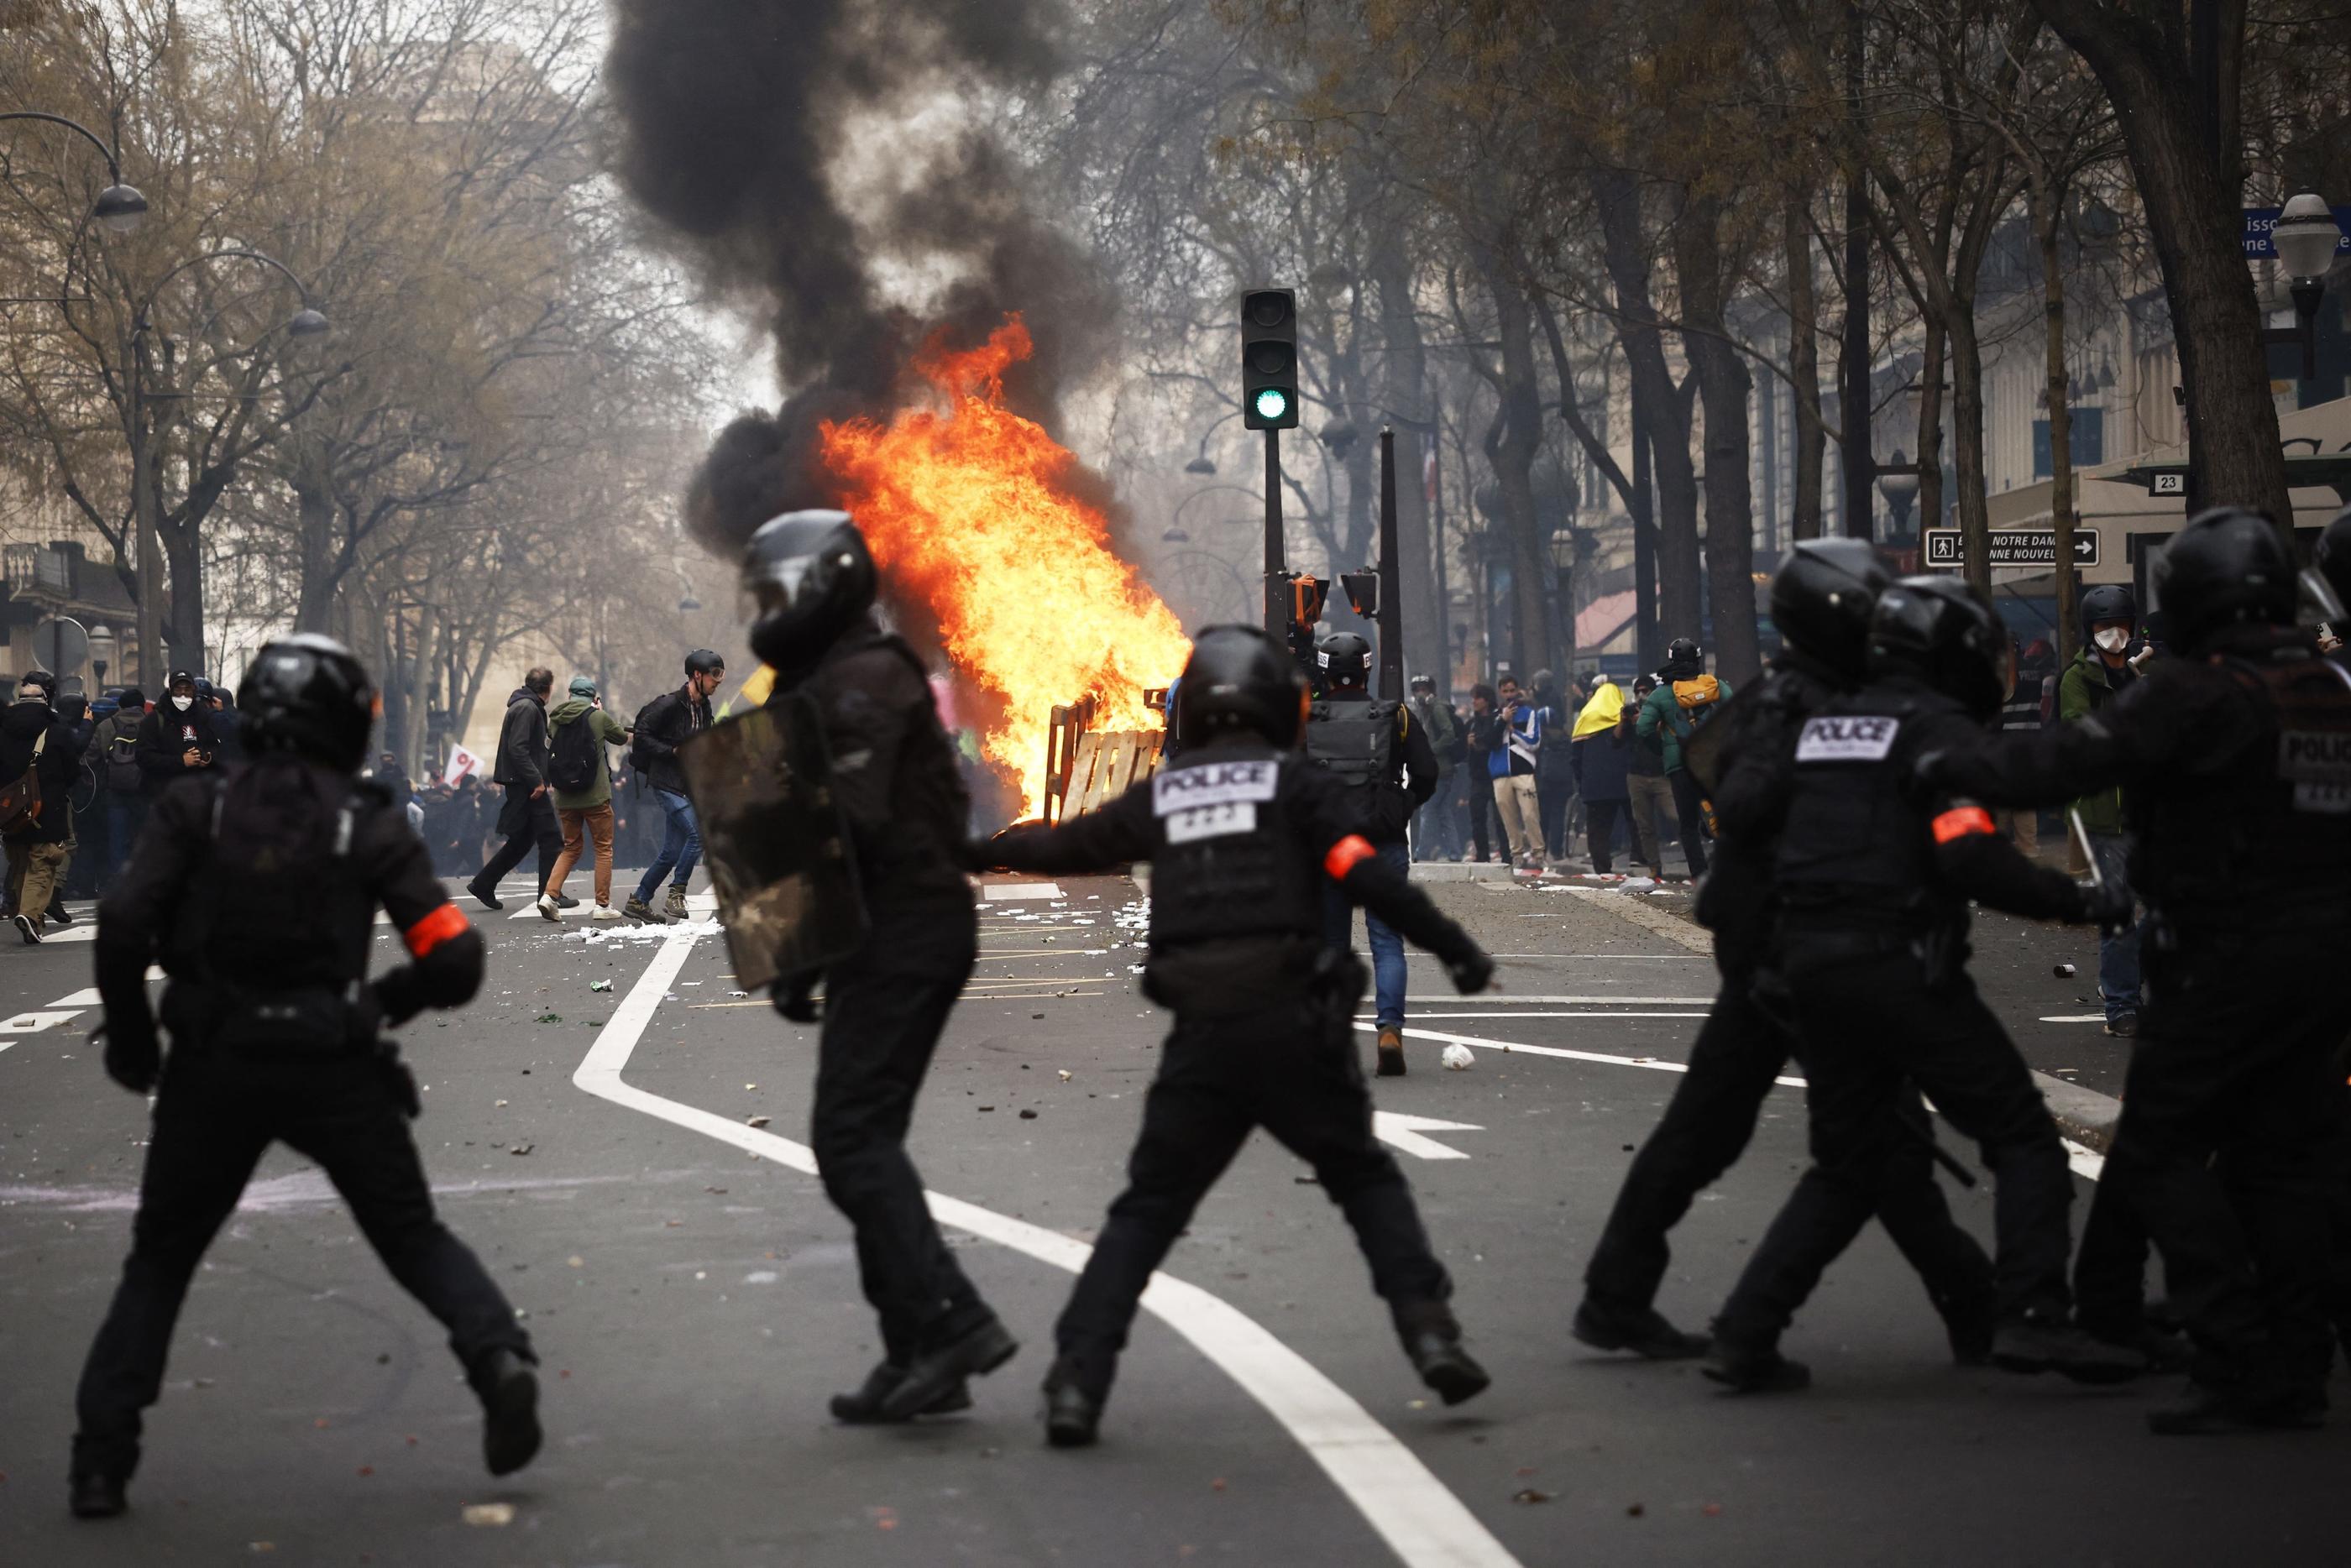 A Paris, les forces de l'ordre ont affronté plusieurs centaines de manifestants radicaux en marge de la manifestation contre la réforme des retraites, jeudi 23 mars. EPA/MAXPPP/Yoan Valat